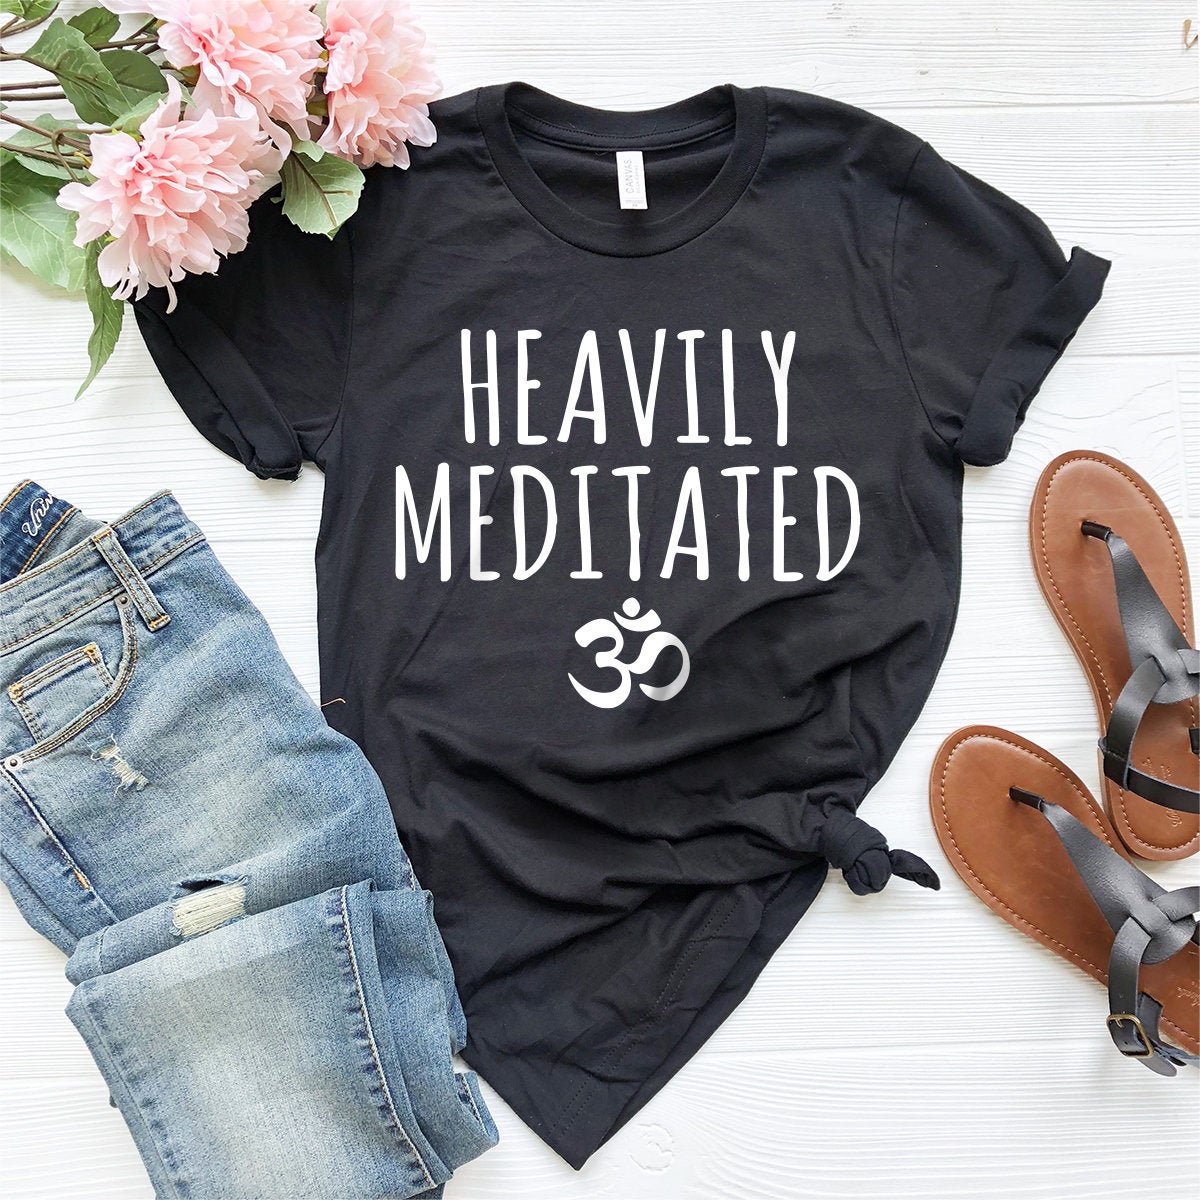 Meditation Shirt, Yoga Shirt, Yoga T-Shirt, Yoga Lover Shirt, Heavily Meditated Shirt, Inspirational Shirt, Yoga Tee, Gift For Yogies - Fastdeliverytees.com